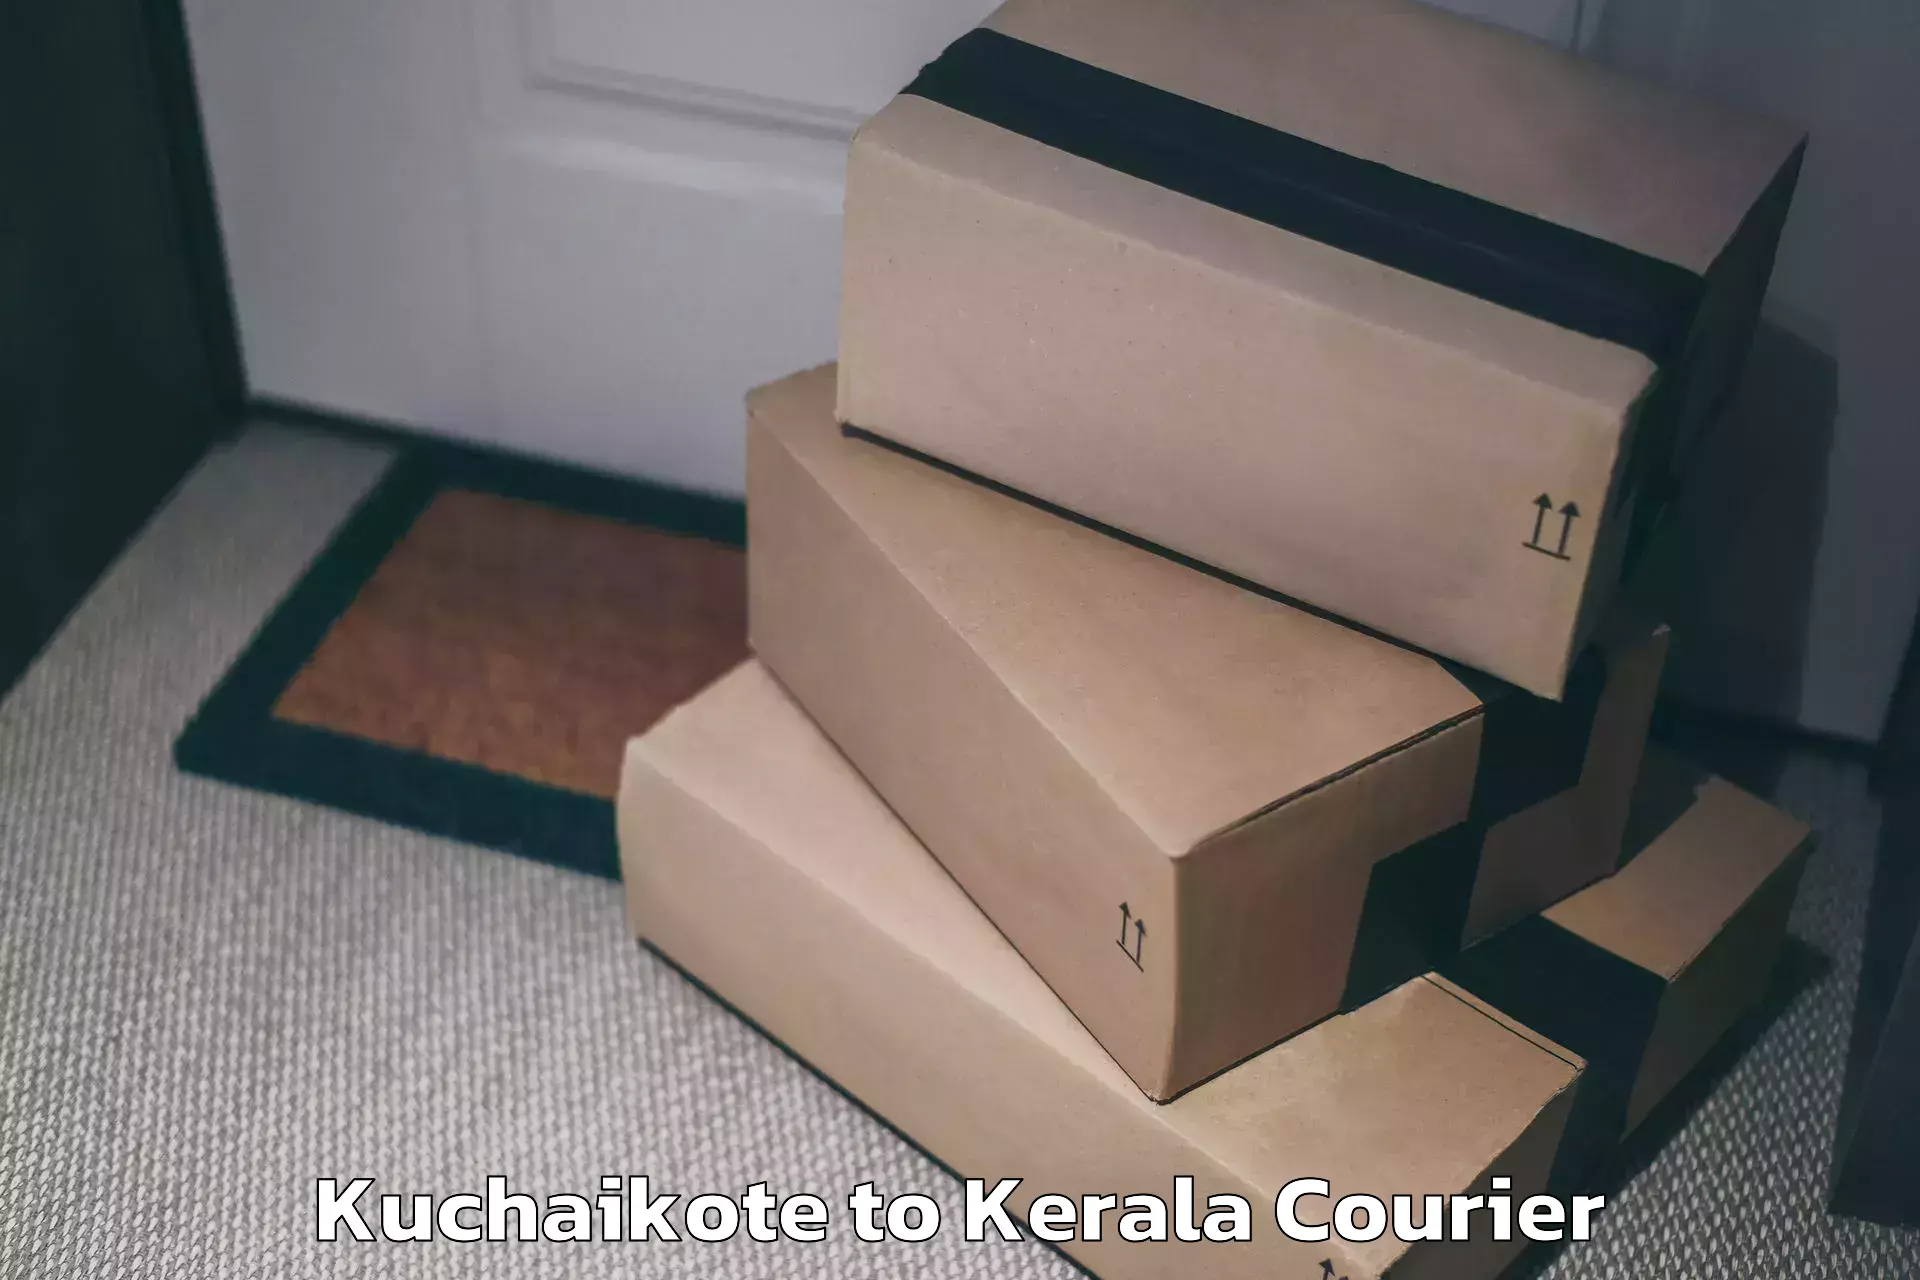 Door-to-door baggage service Kuchaikote to Kattappana